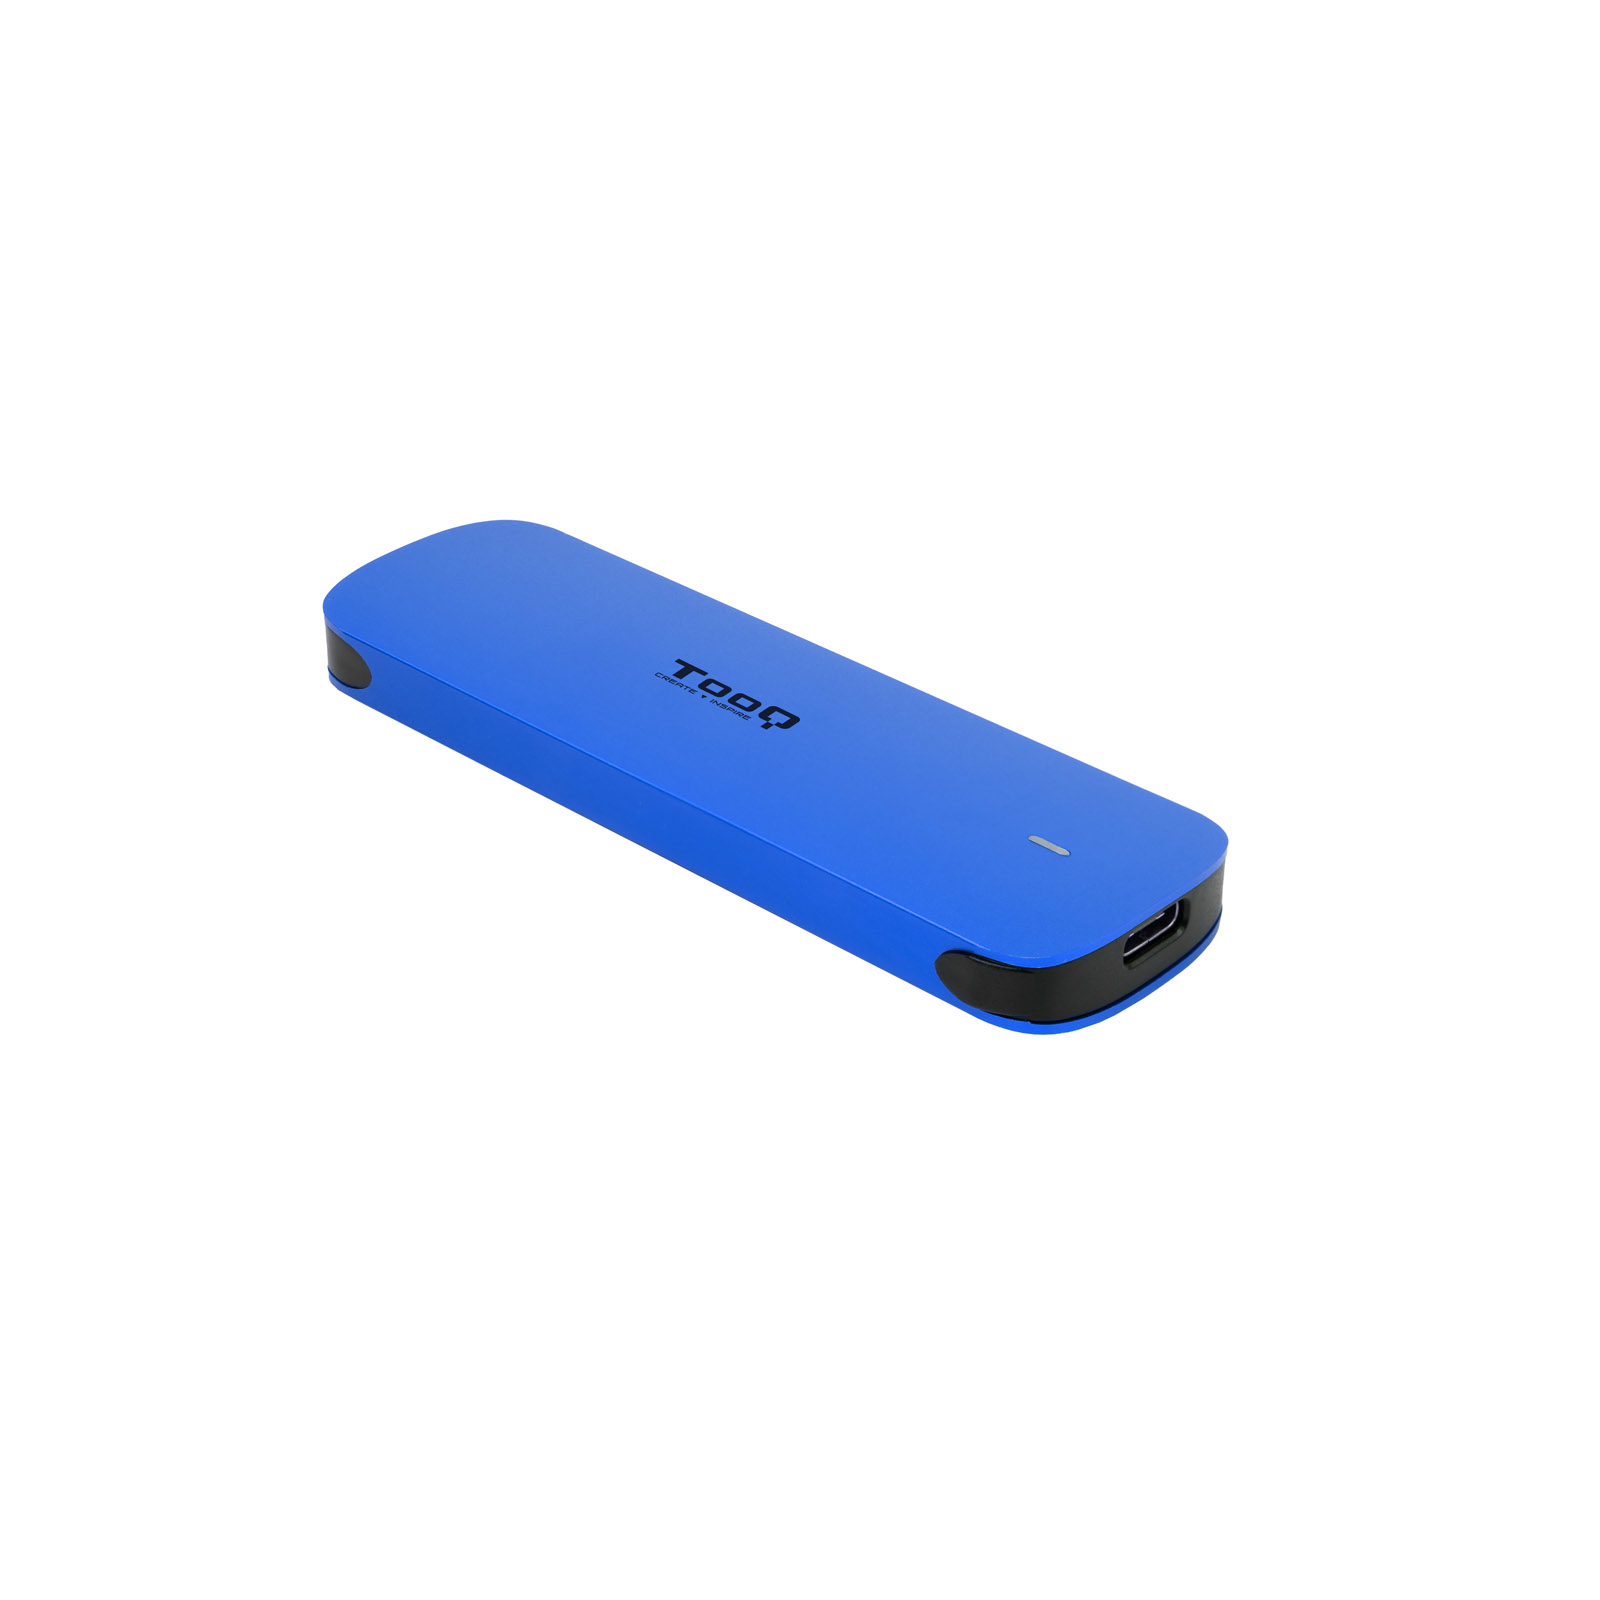 Tooq - Tooq Caja SSD M.2 NGFF/NVMe SSD USB 3.1 Gen 2 Aluminio Azul